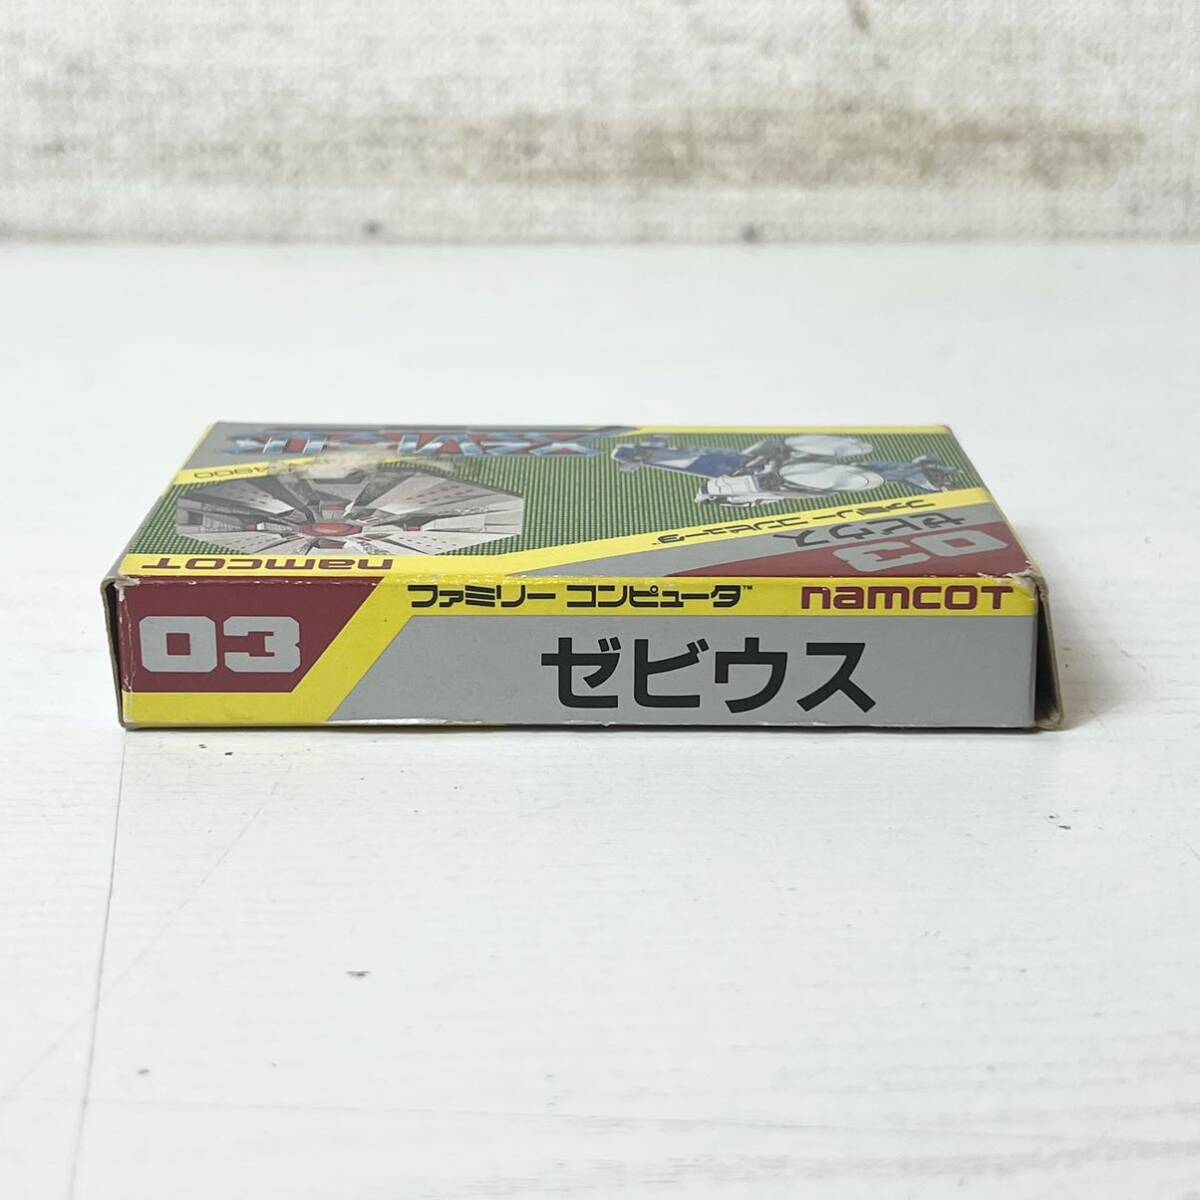 245* б/у товар Namco zebi незначительный Famicom soft FC Family компьютер работоспособность не проверялась текущее состояние товар *